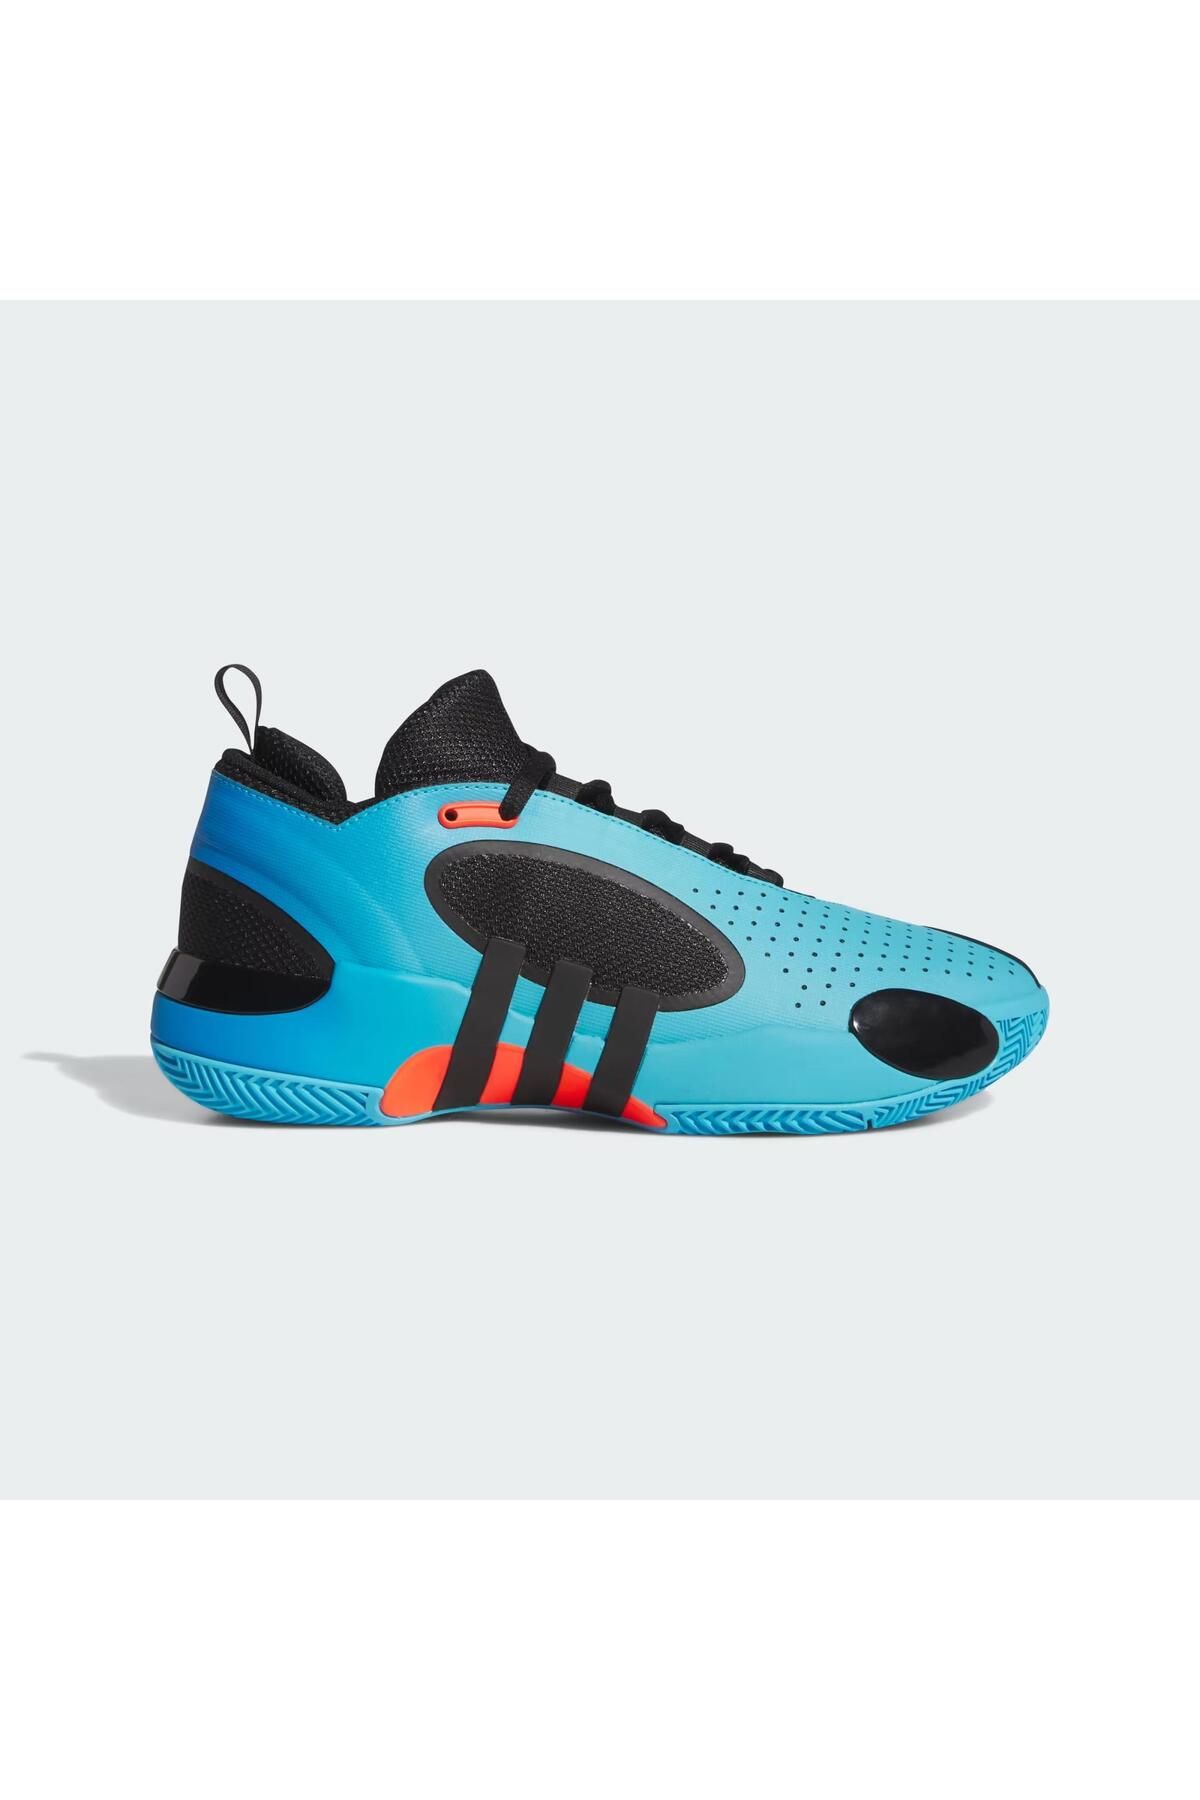 adidas D.O.N. Issue 5 Erkek Basketbol Ayakkabısı